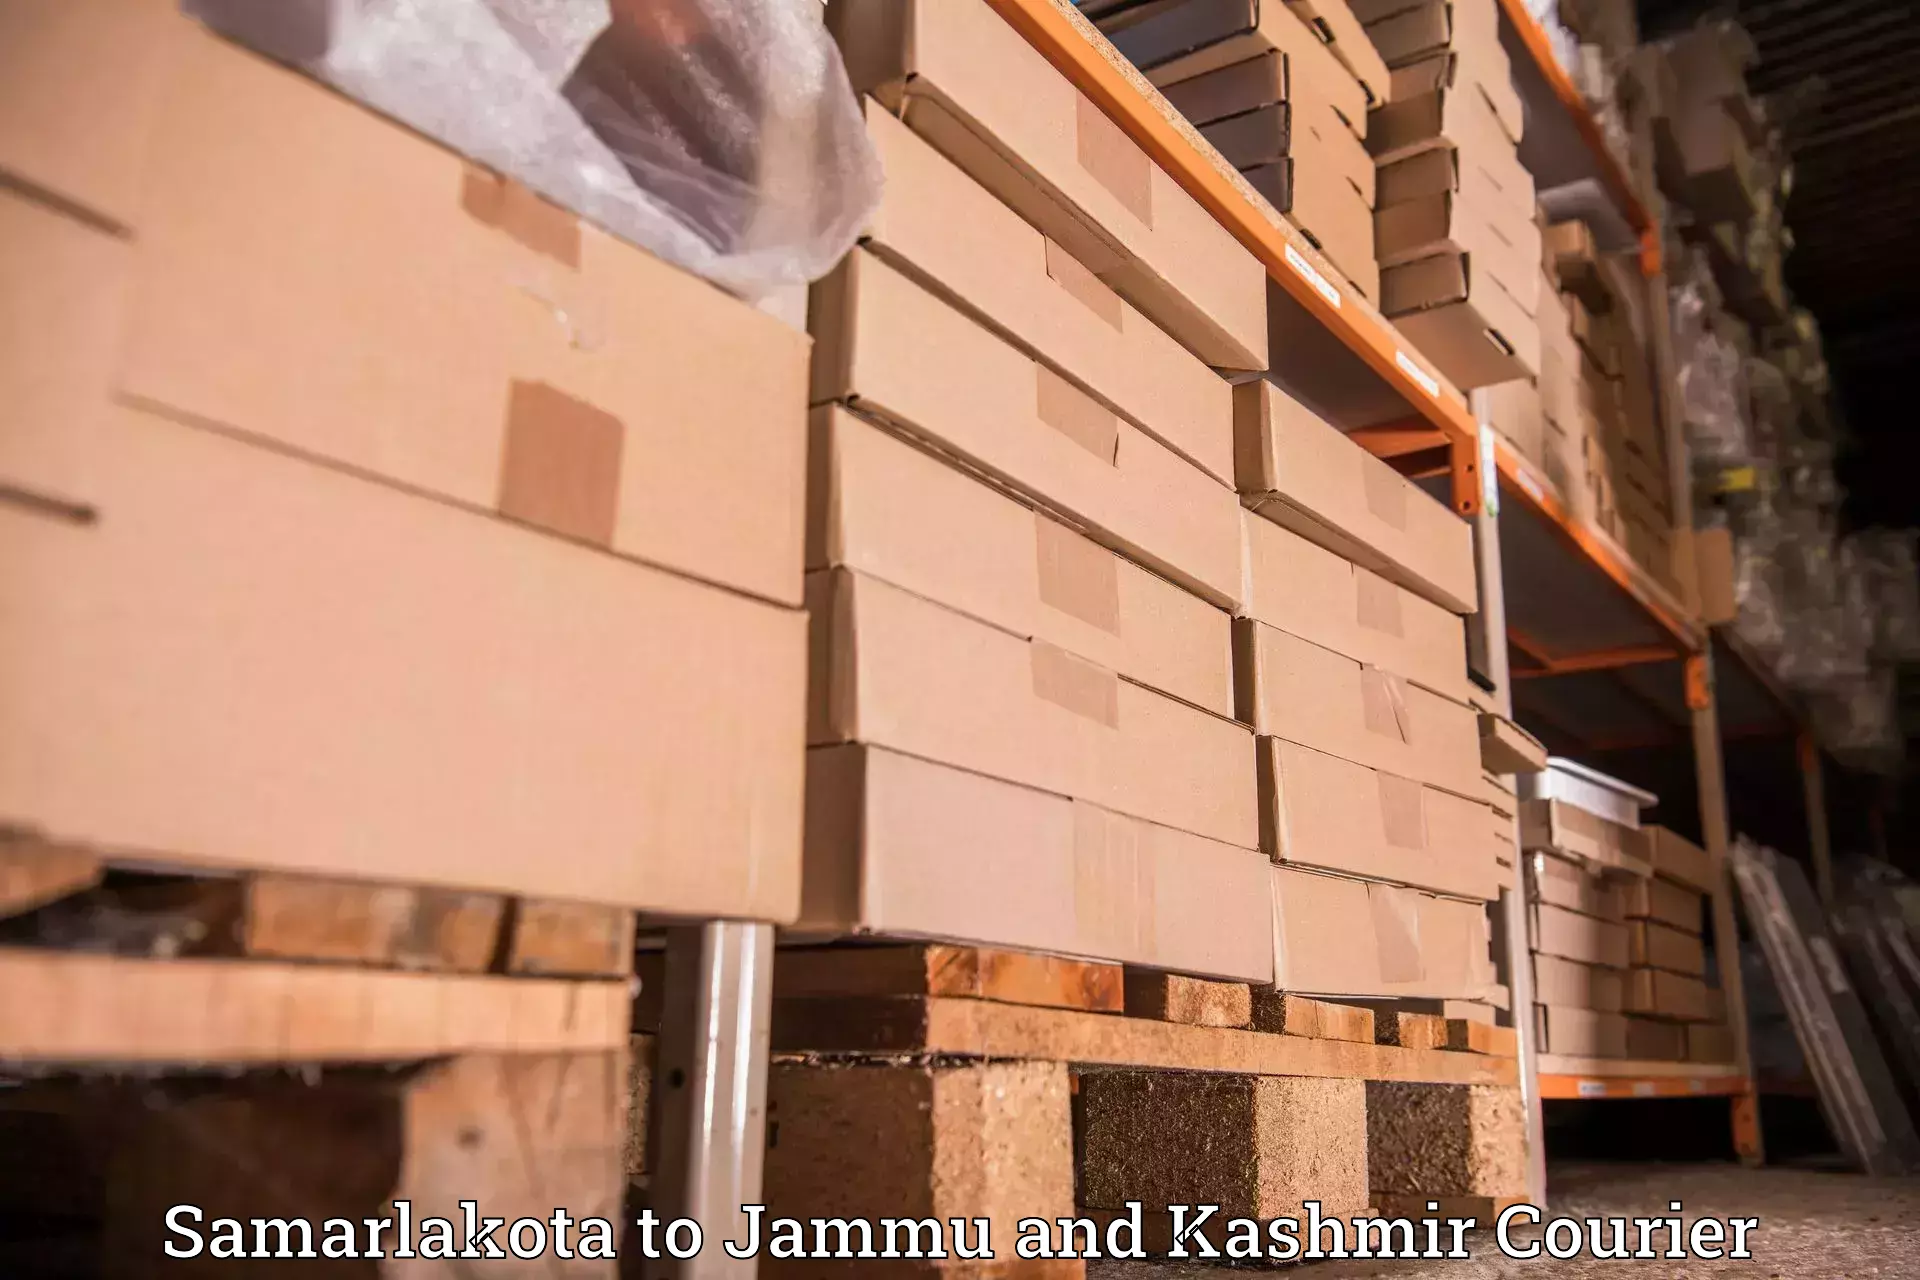 Nationwide shipping capabilities in Samarlakota to Jammu and Kashmir